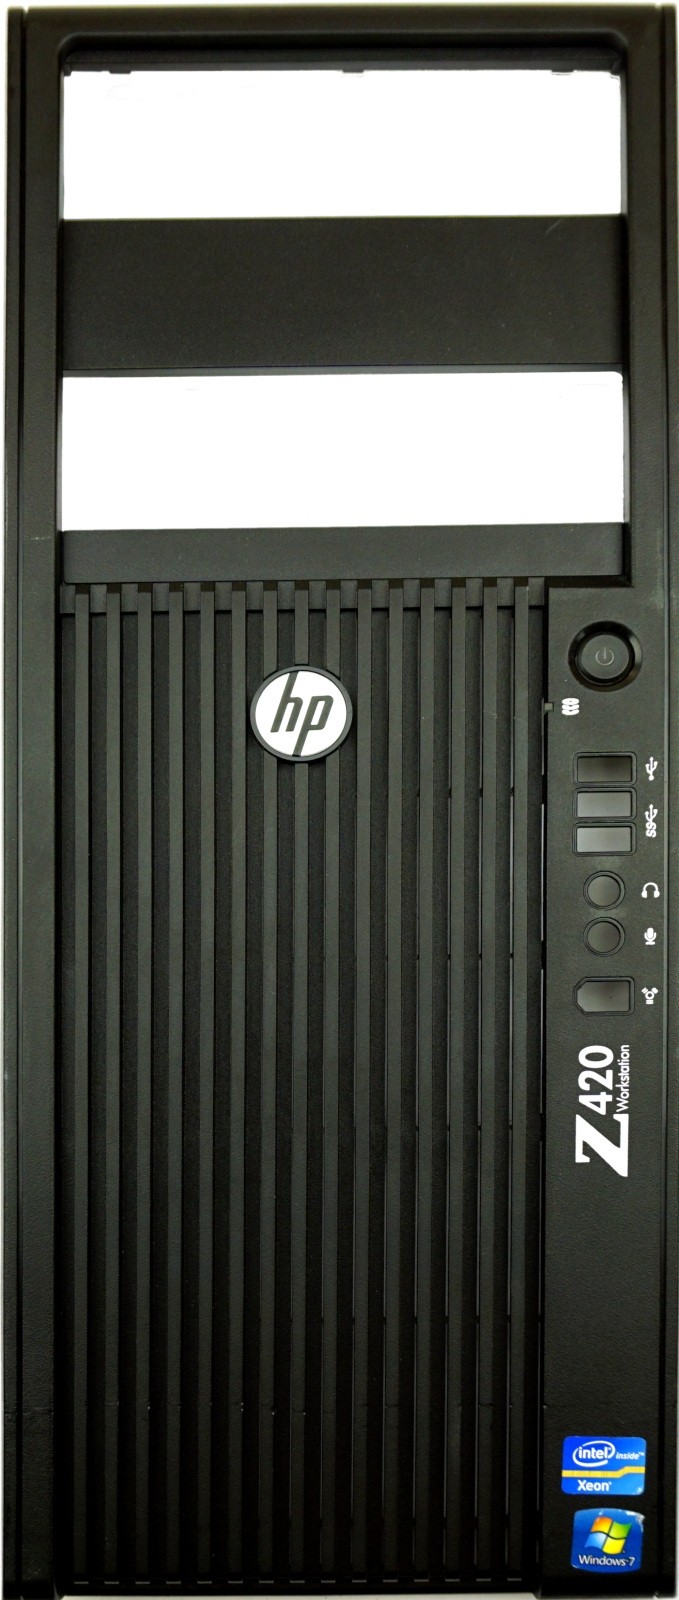 HP Z420 Front Bezel